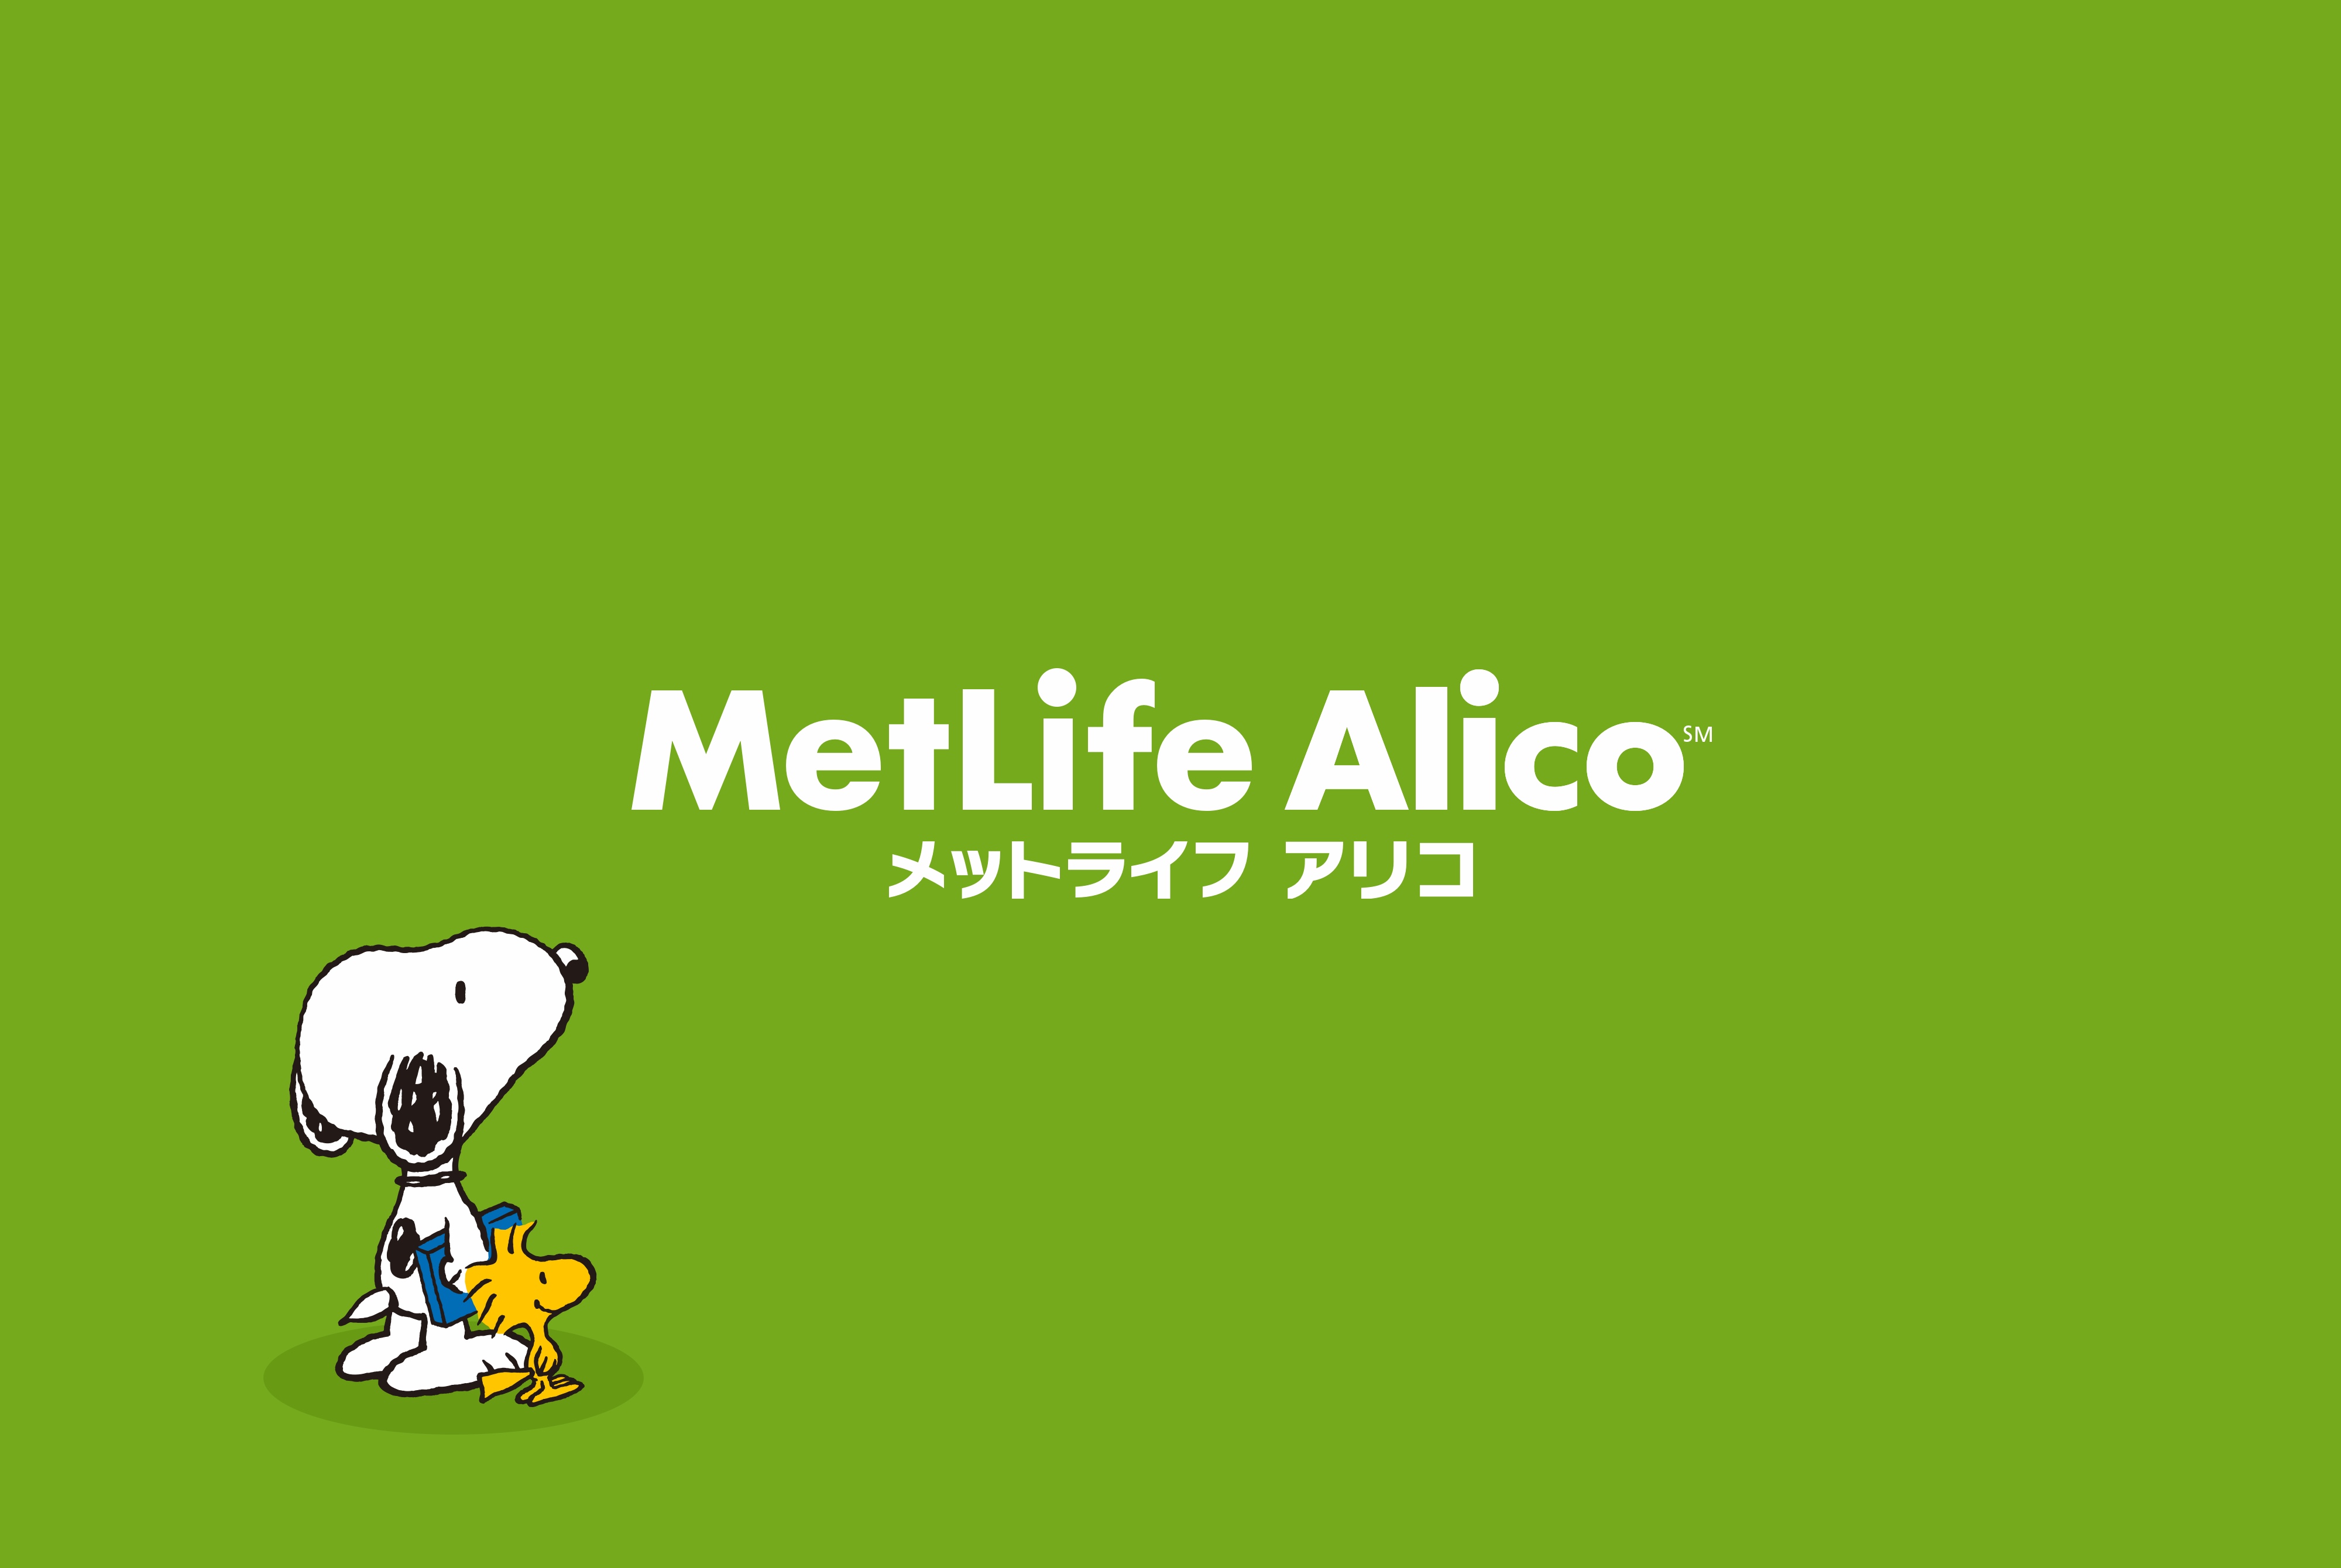 MetLife Japan